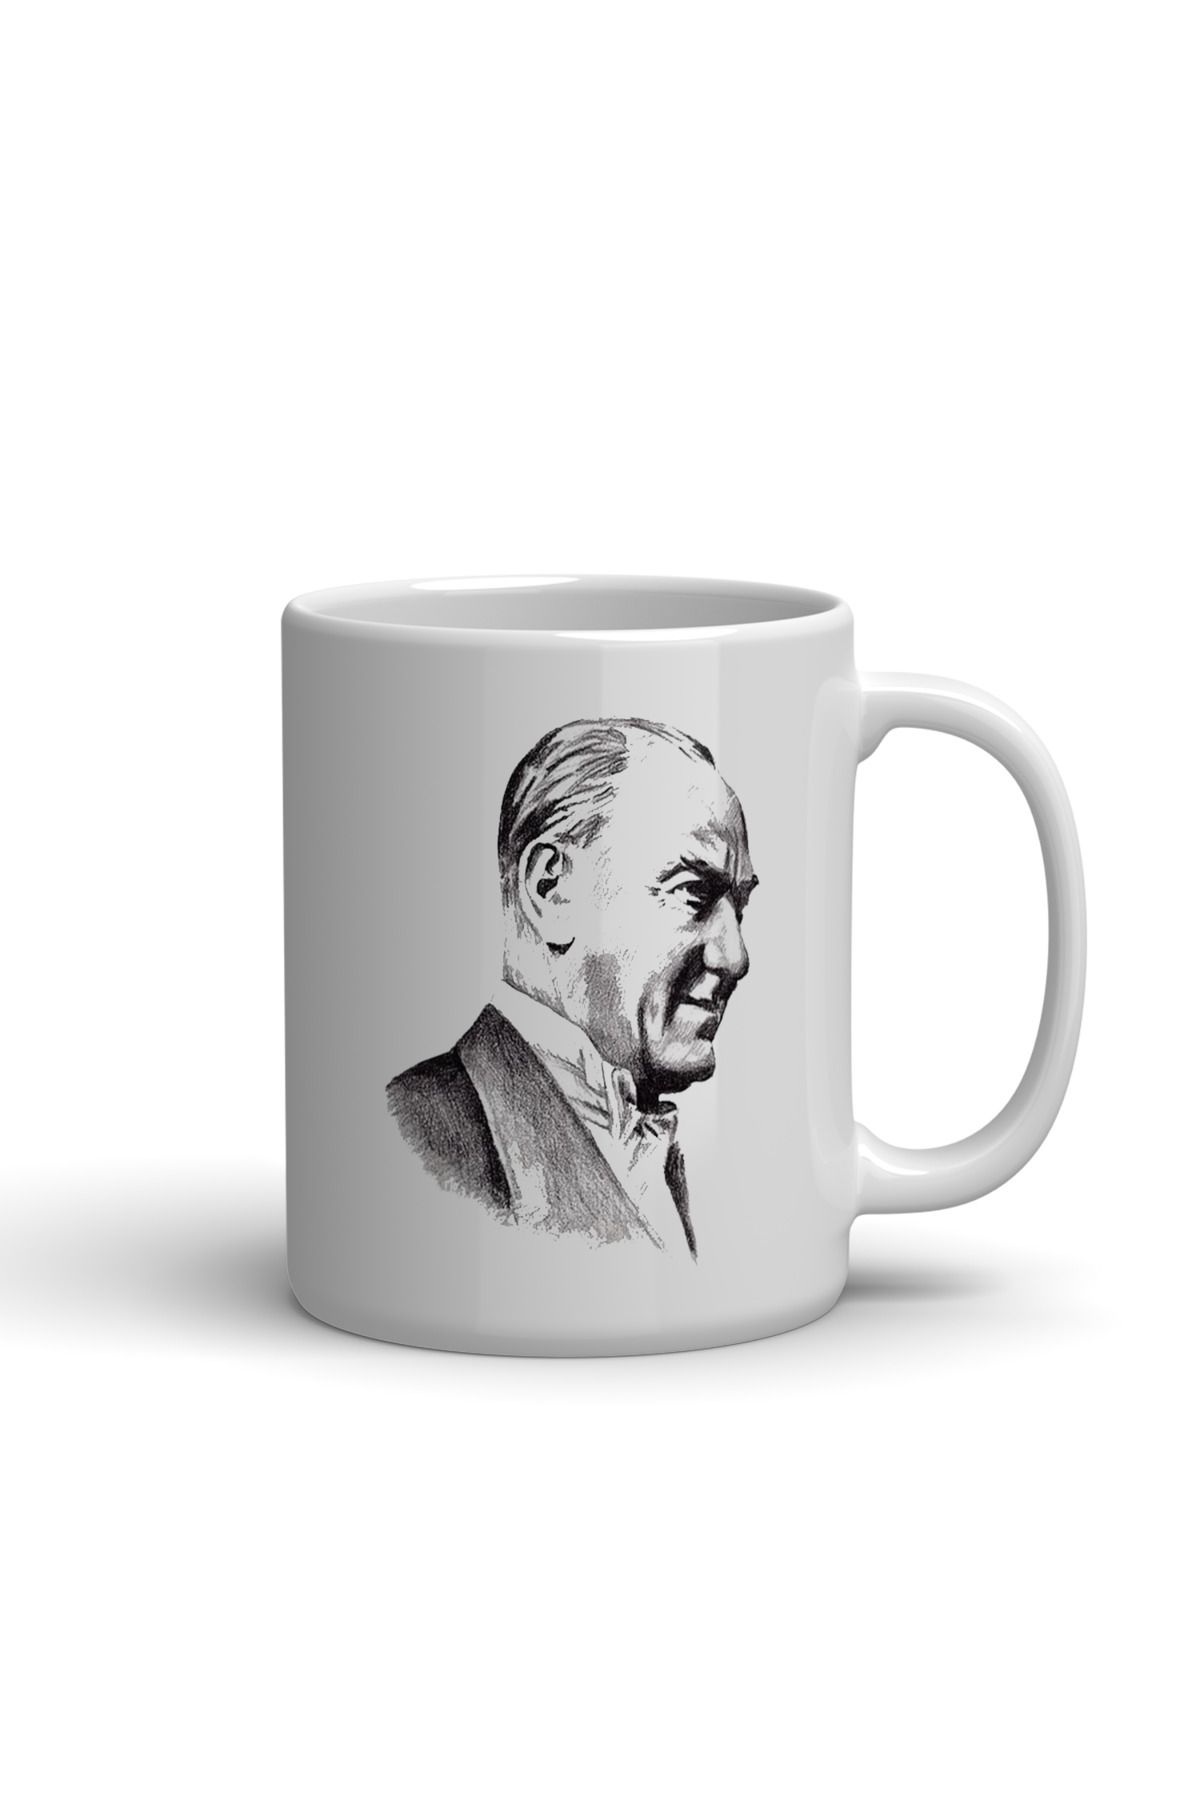 NACARLAR Atatürk Çizimli Baskılı Kupa Bardak